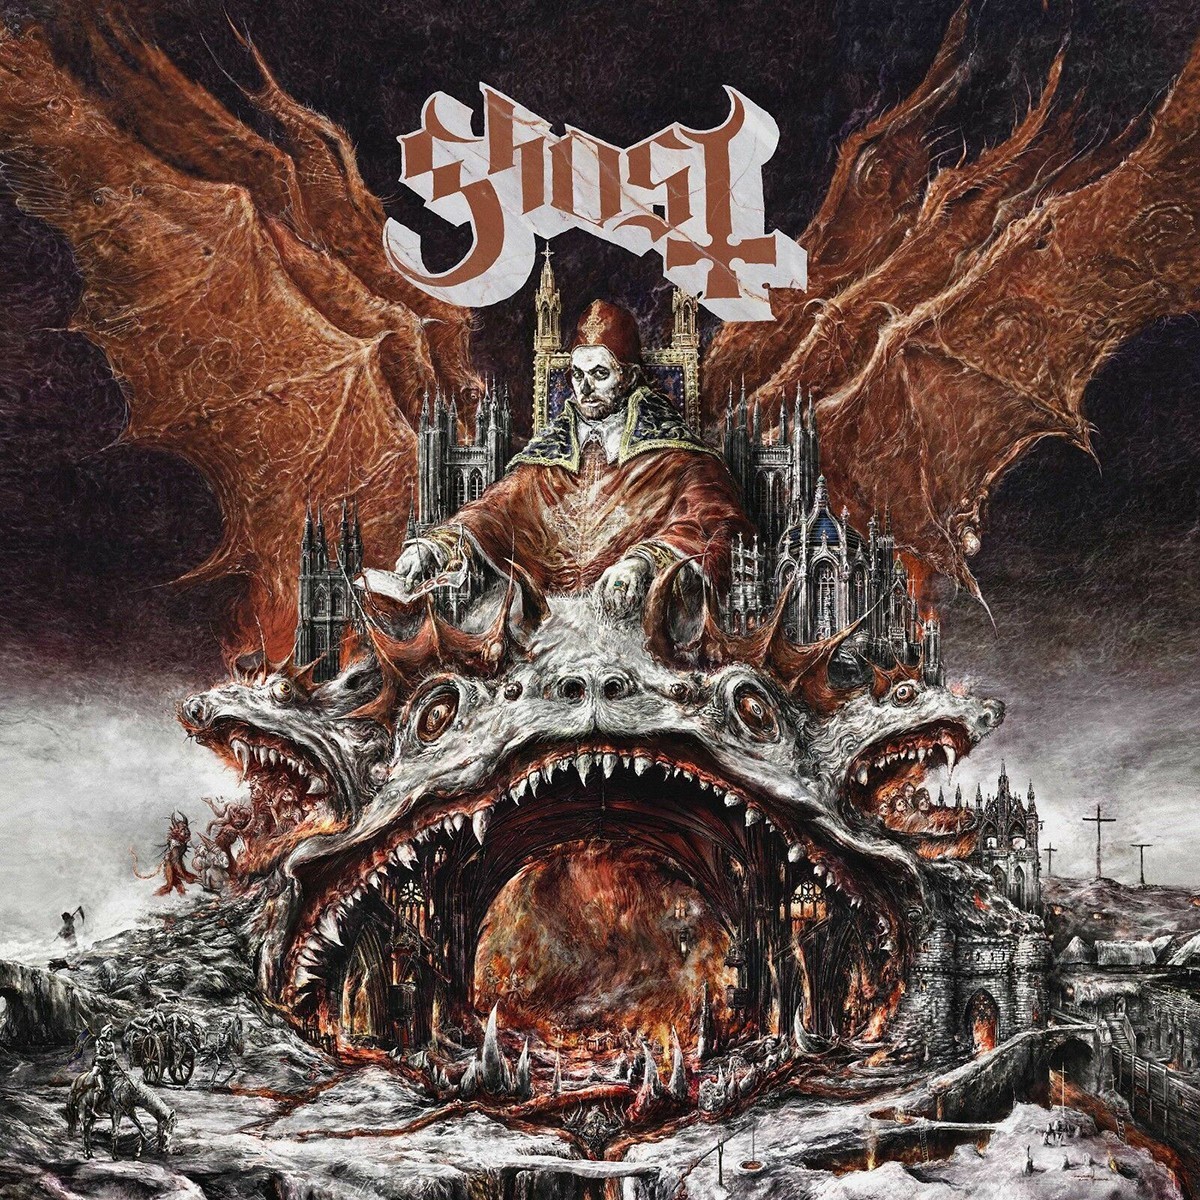 Capa do álbum "Prequelle" de Ghost